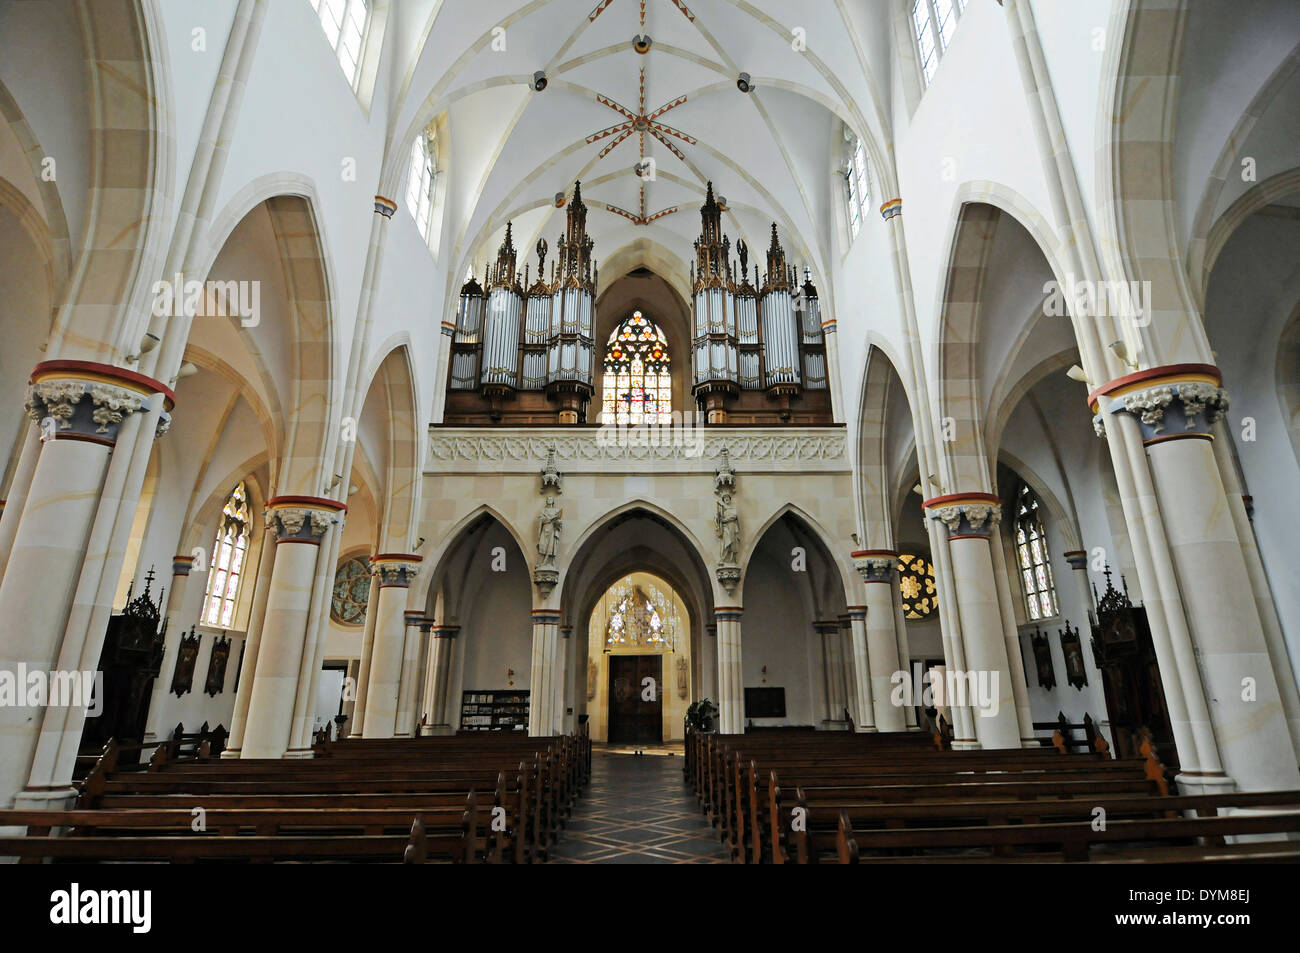 Orgel, Wallfahrt Kirche von St. Ida, Basilika, Herzfeld, Münsterland Region, North Rhine-Westphalia, Deutschland Stockfoto